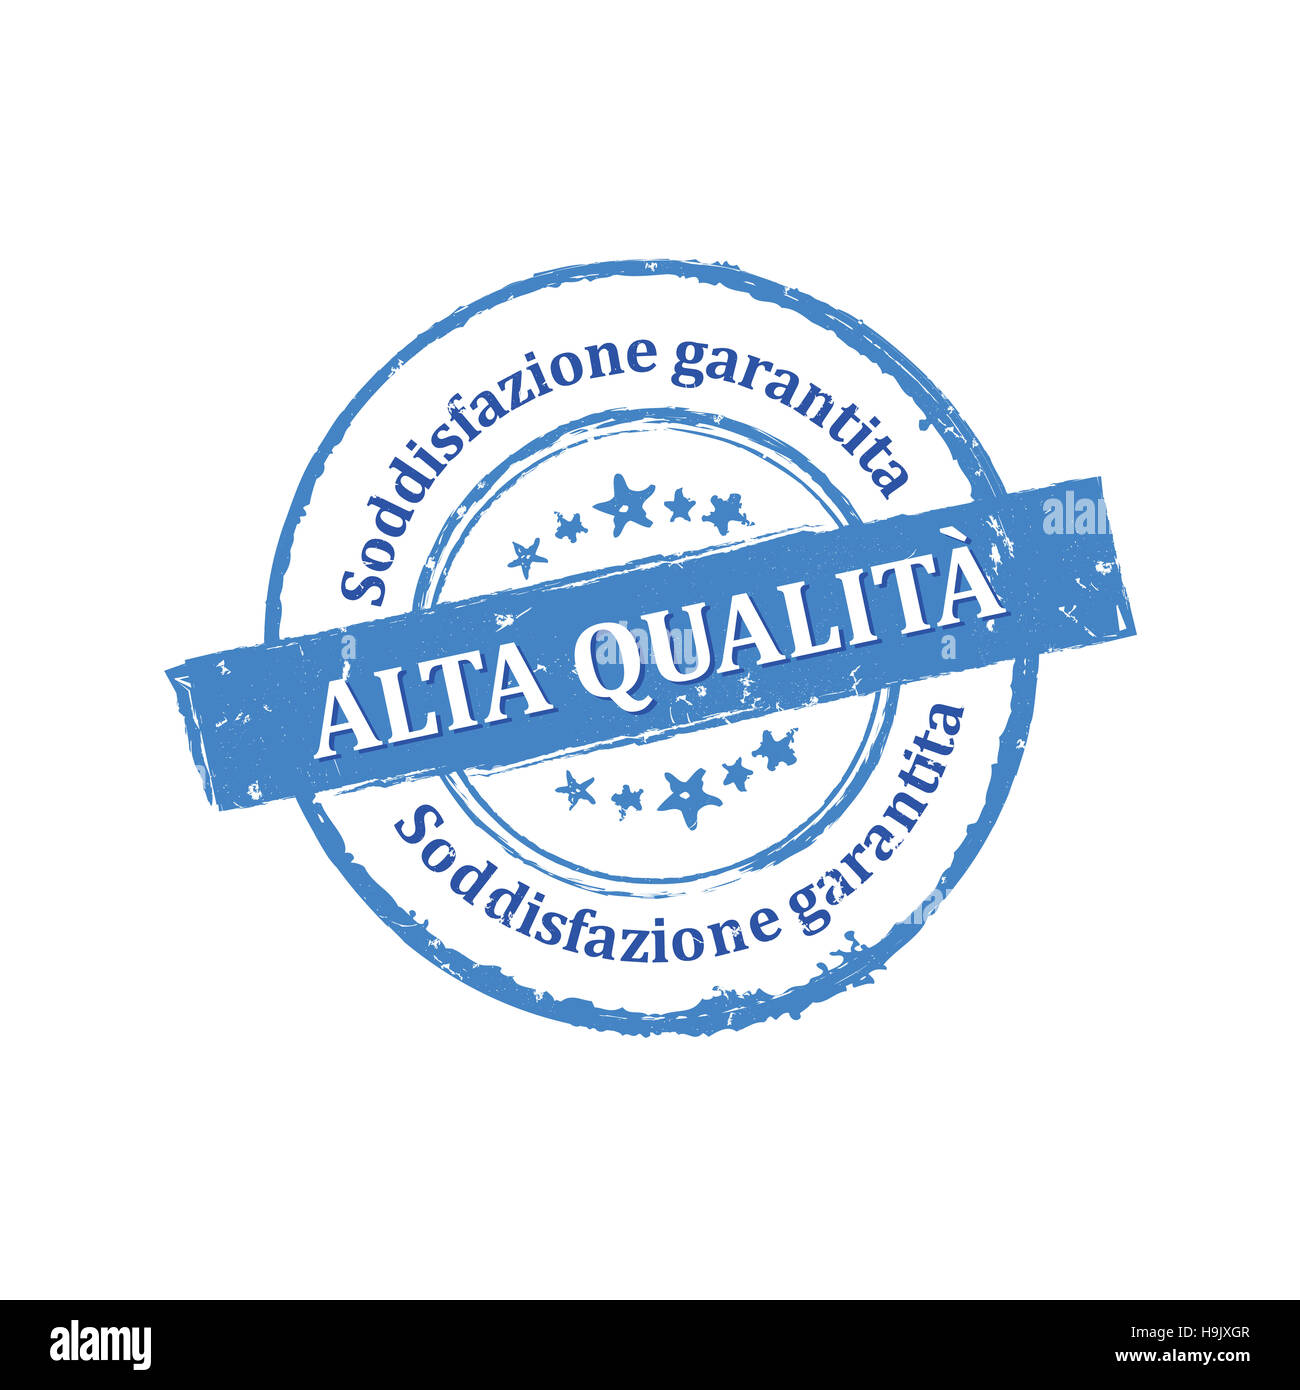 Alta Premium, Soddisfazione Garantita etichetta / Medaglia Stock Photo